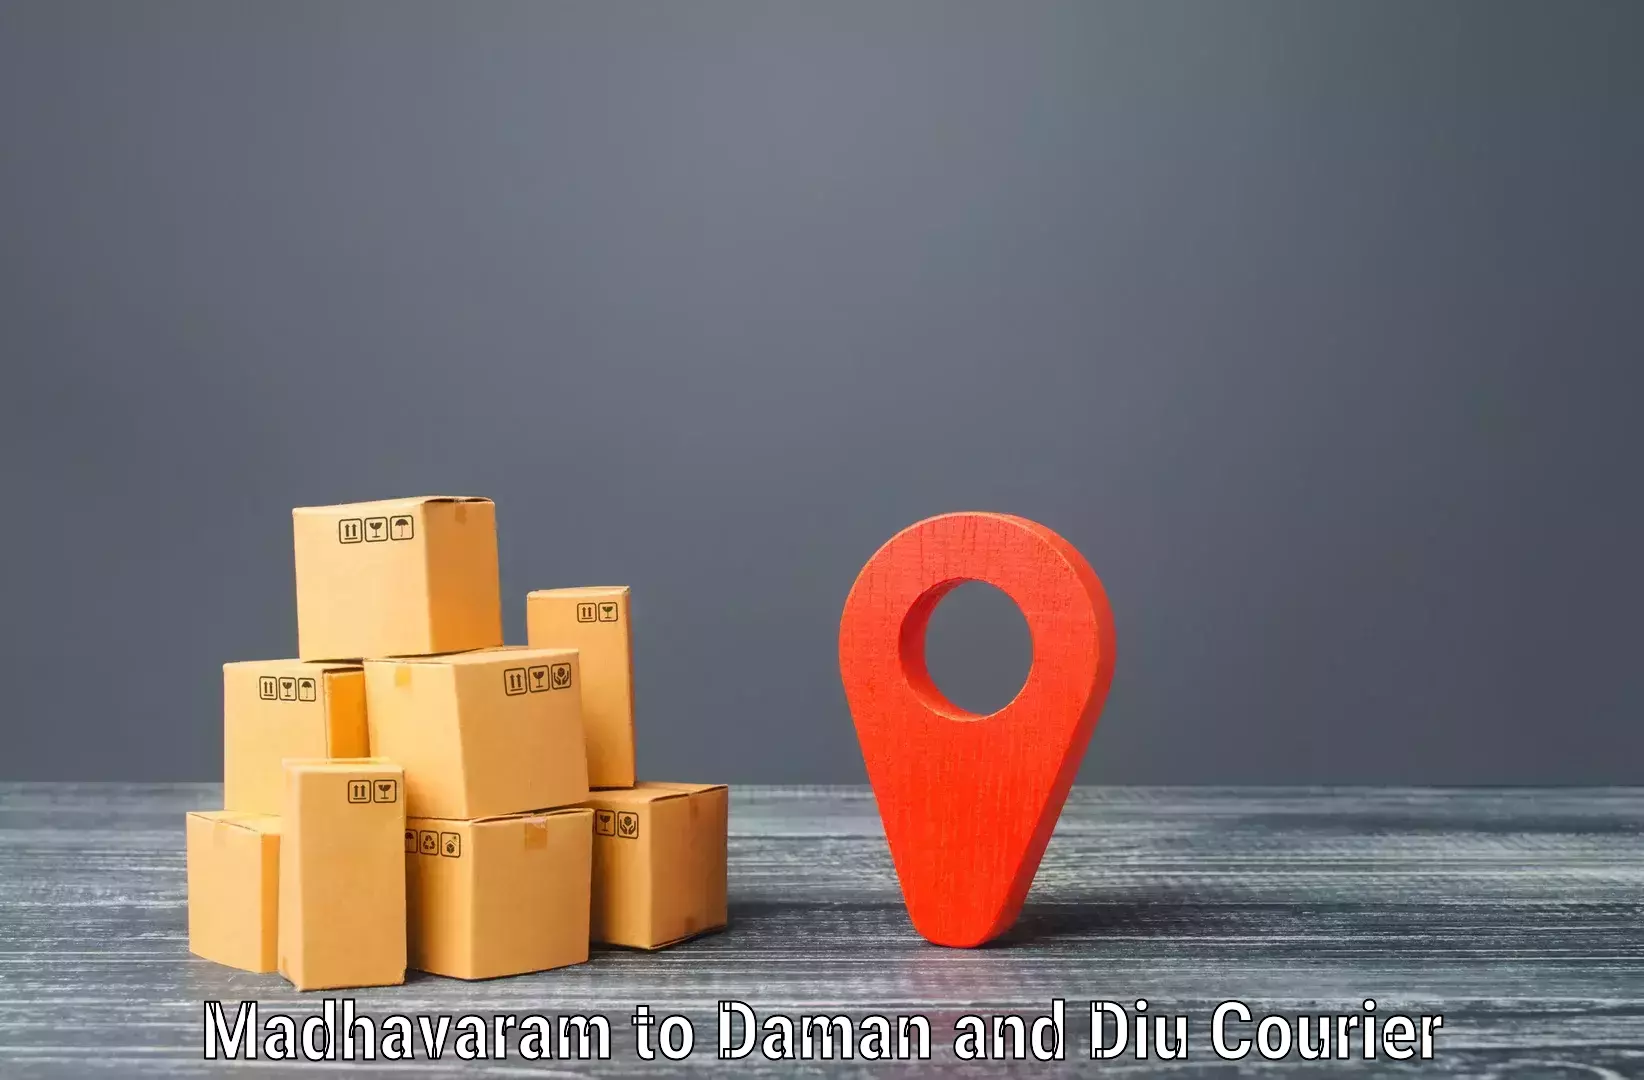 Integrated logistics solutions Madhavaram to Diu